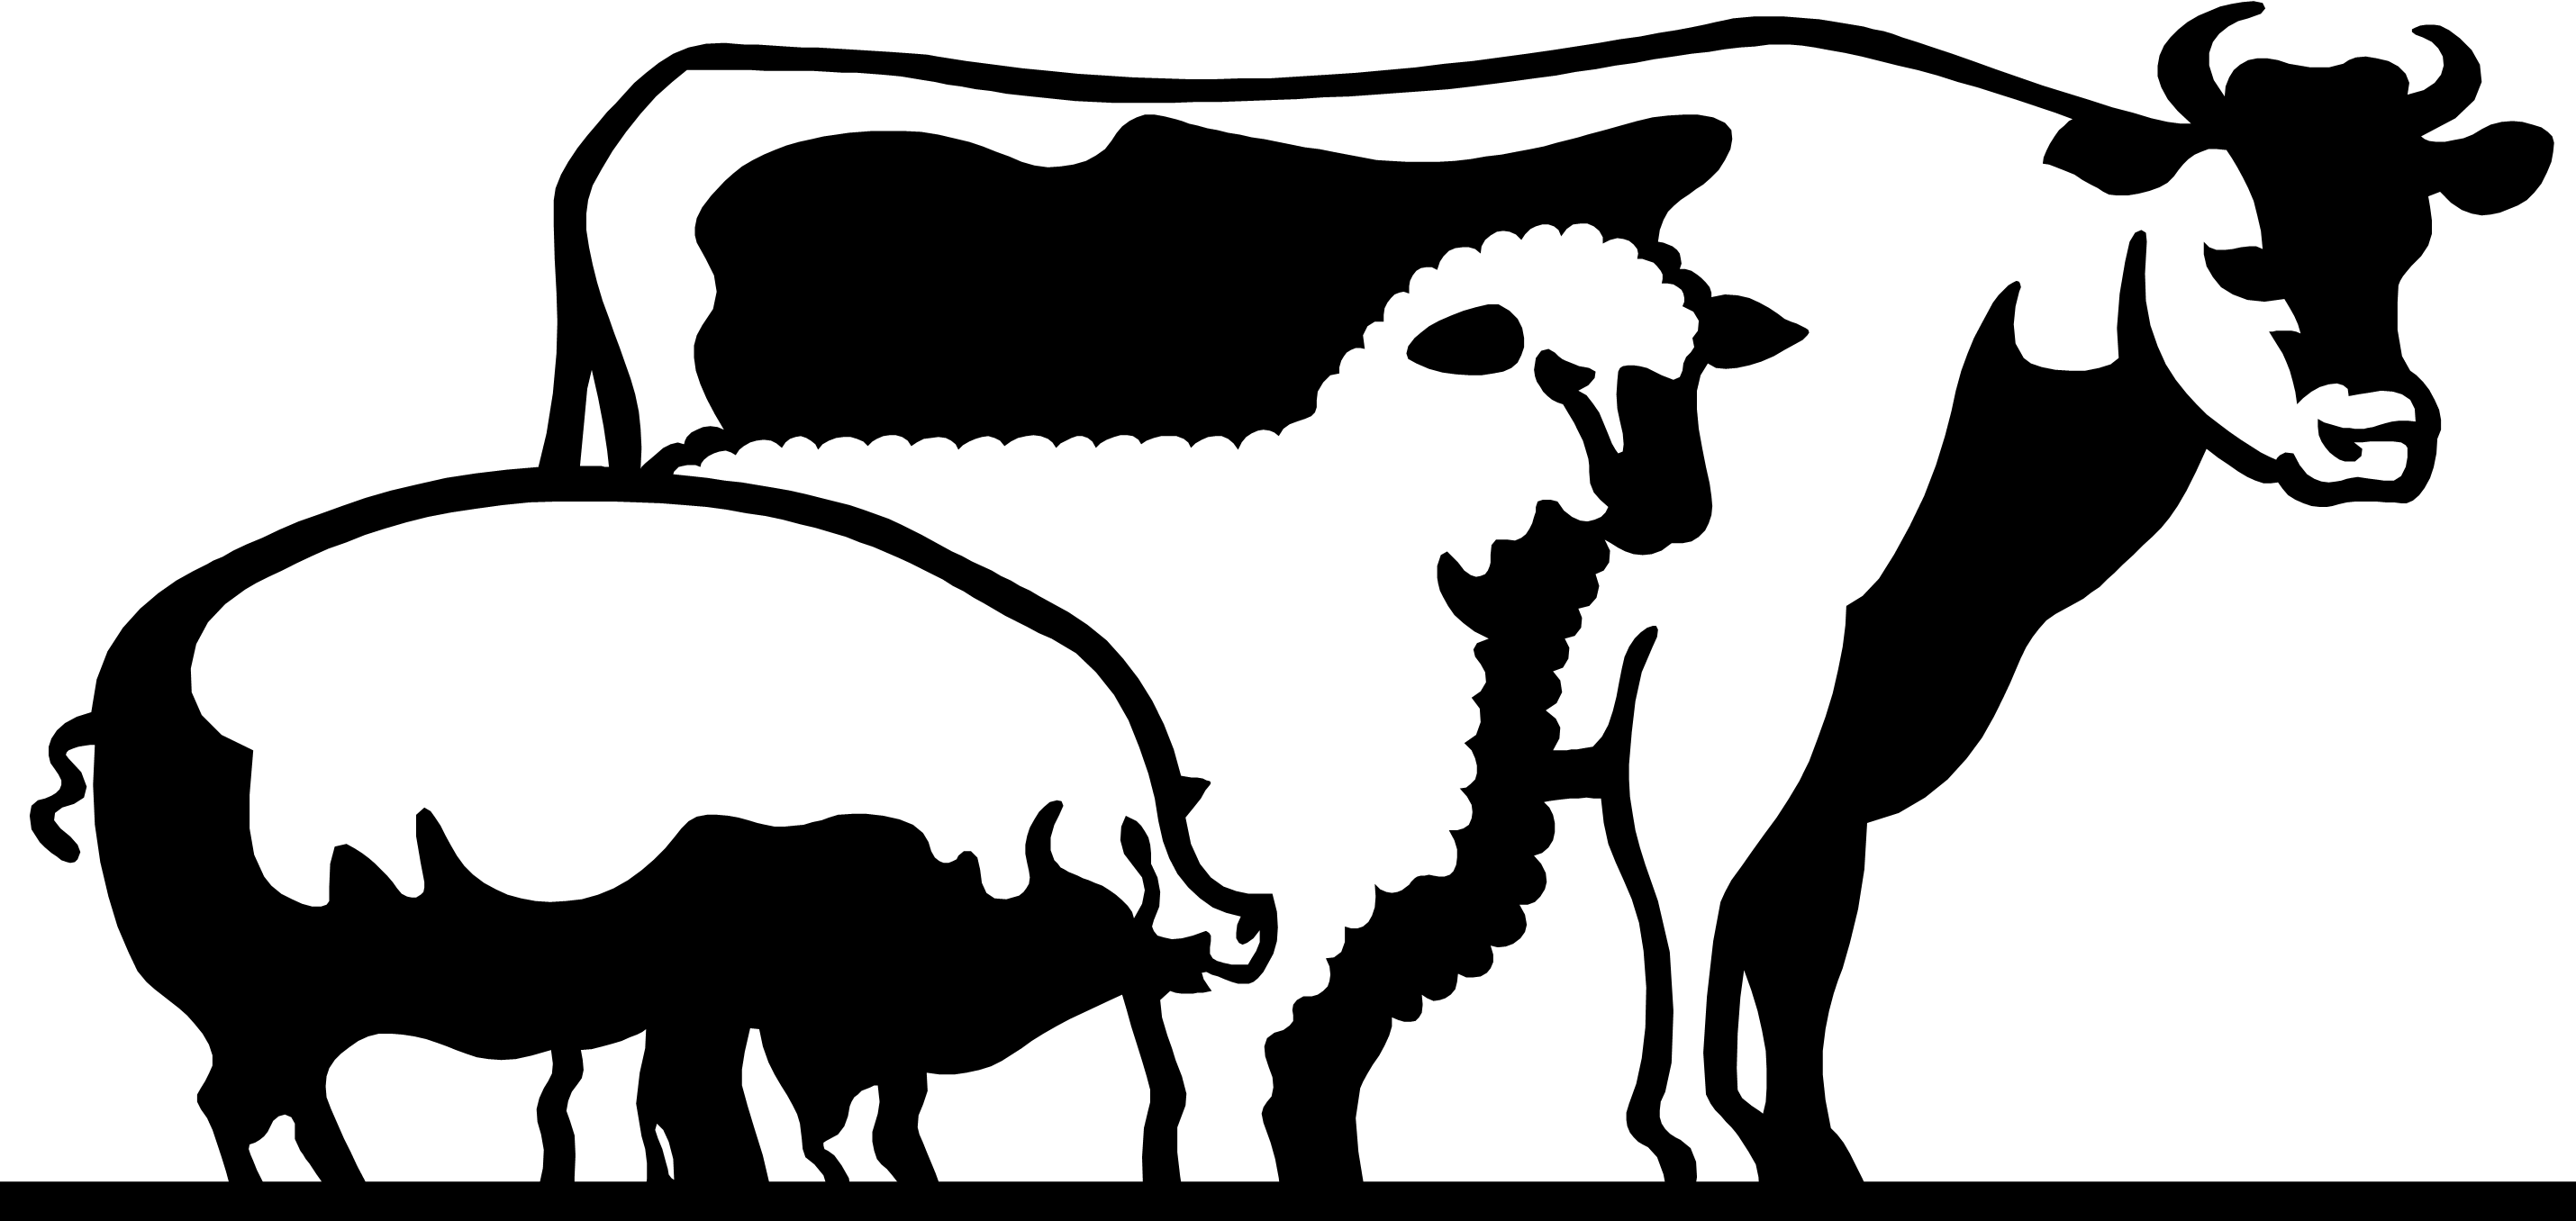 Сельское хозяйство - Животноводство - Animal husbandry - Мясная промышленность